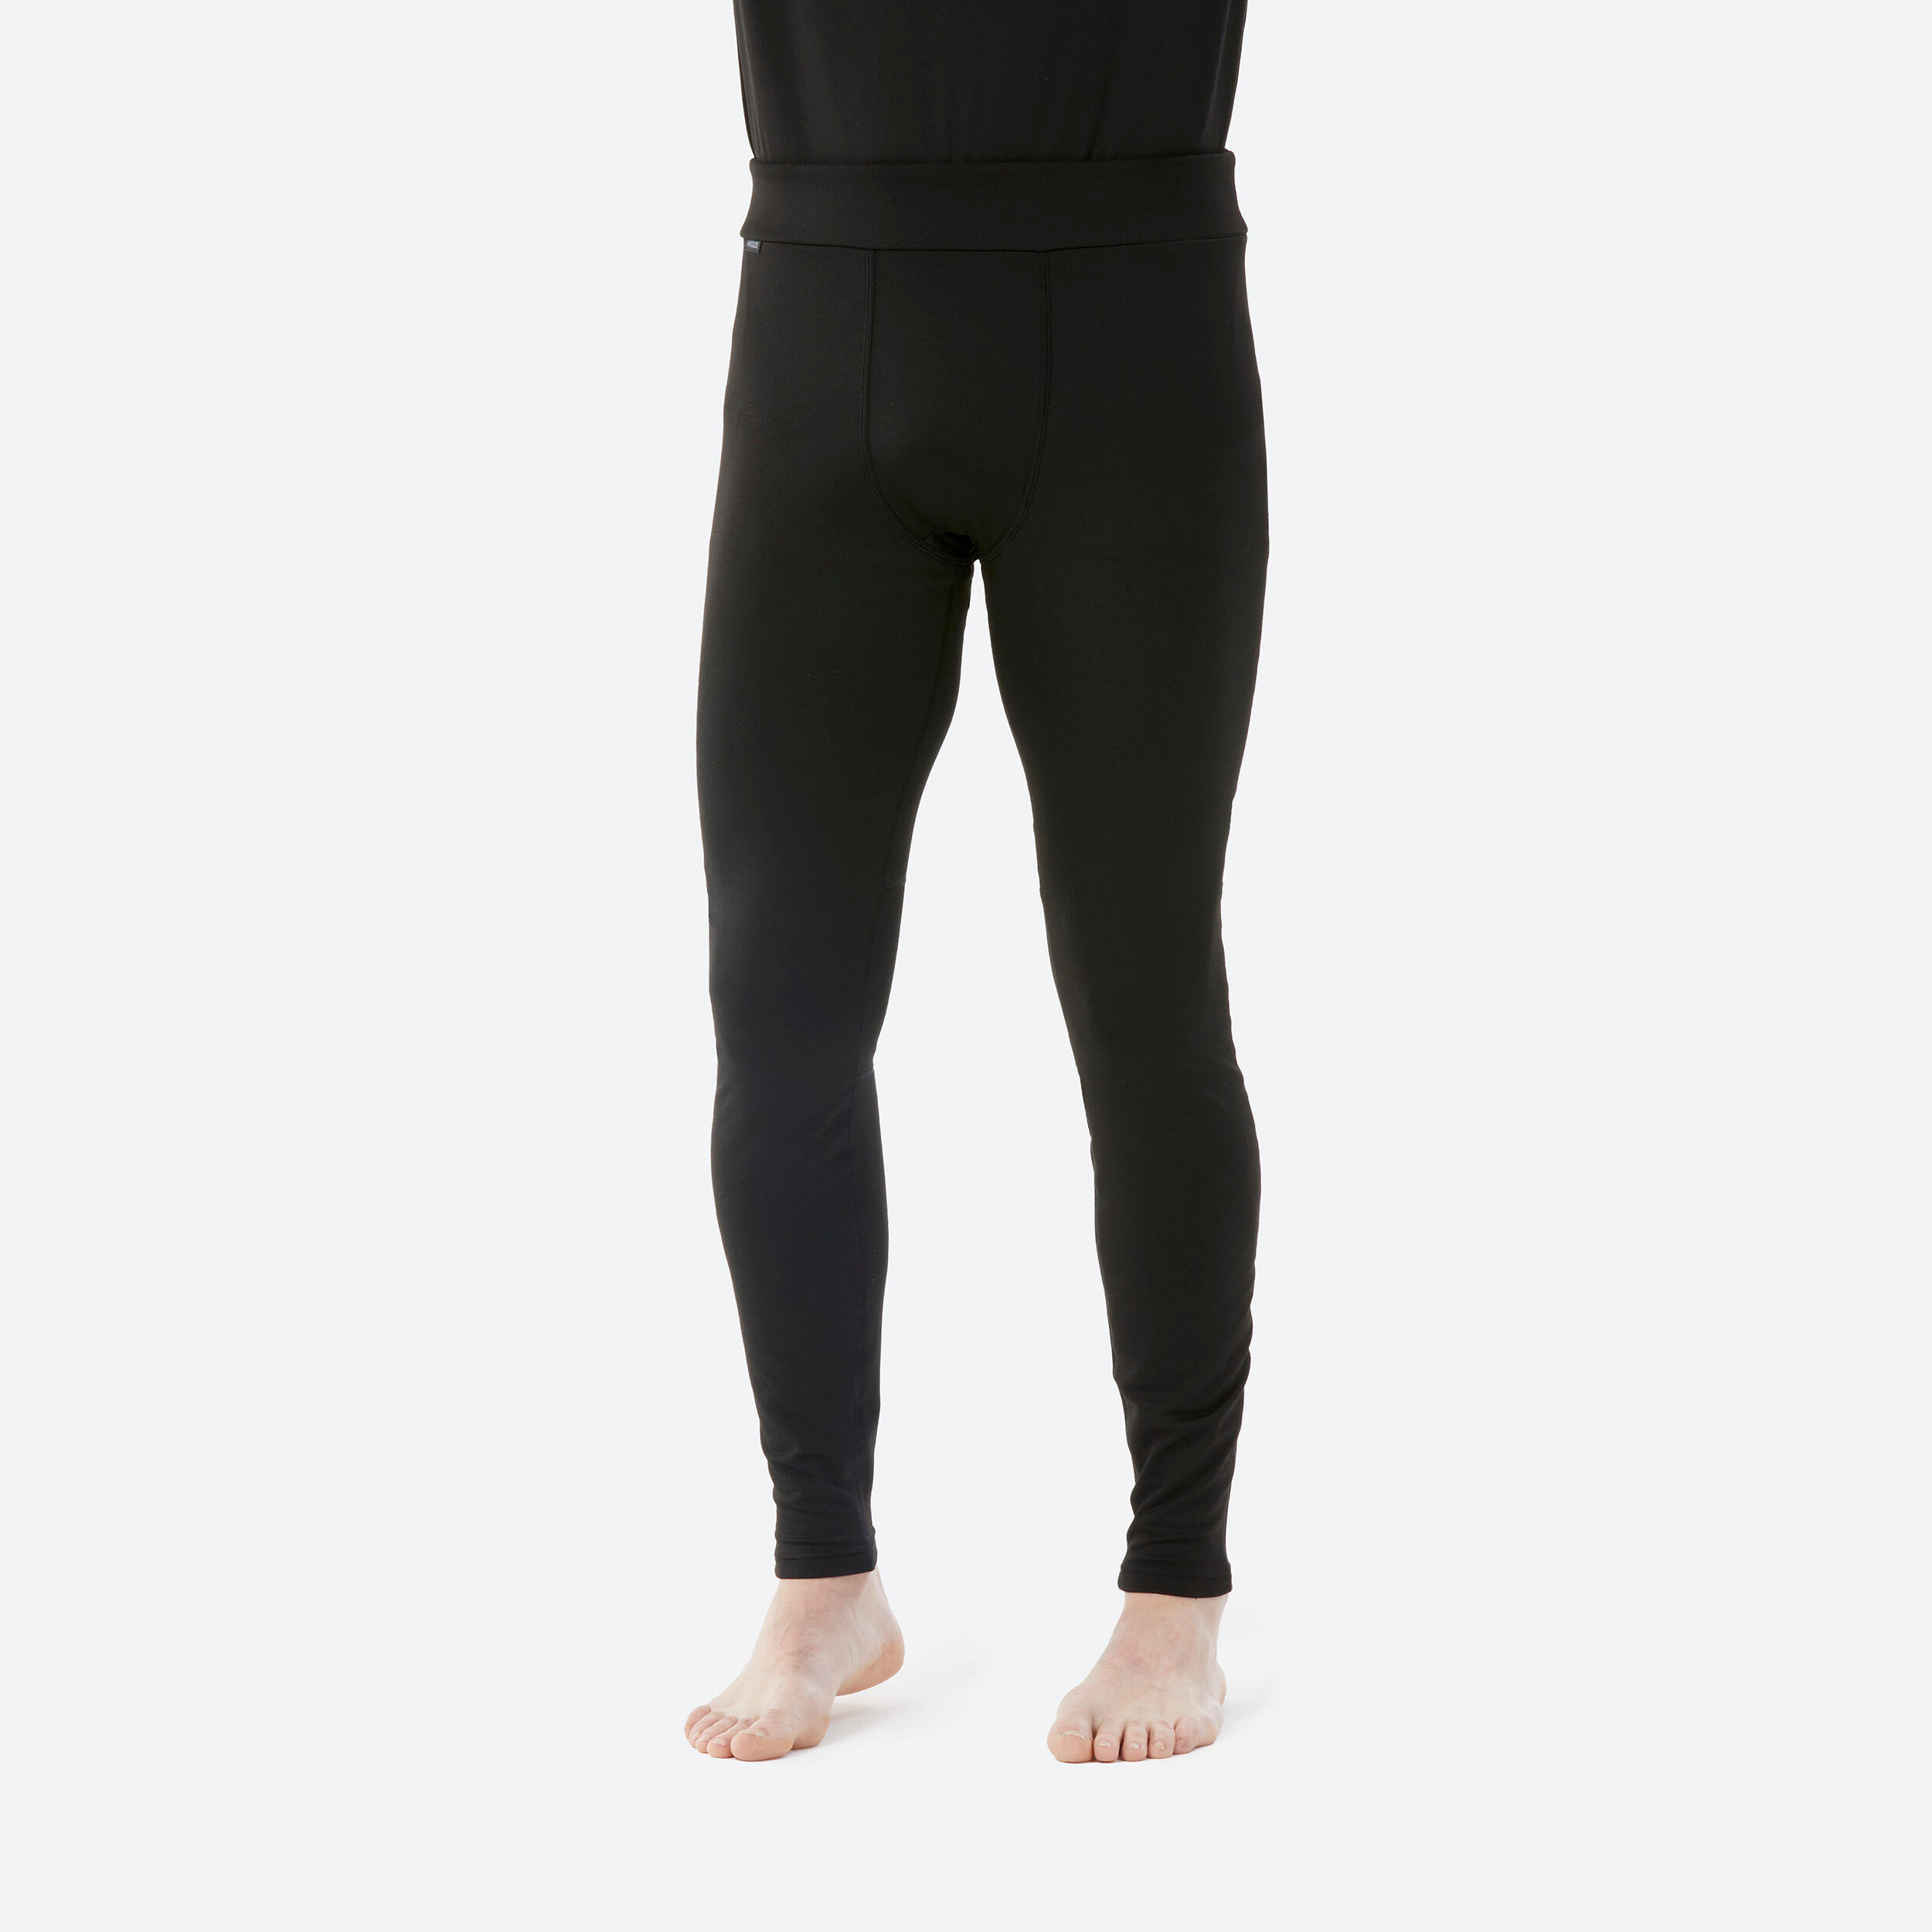 WEDZE Sous-vêtement thermique de ski Homme - BL 500 bas noir